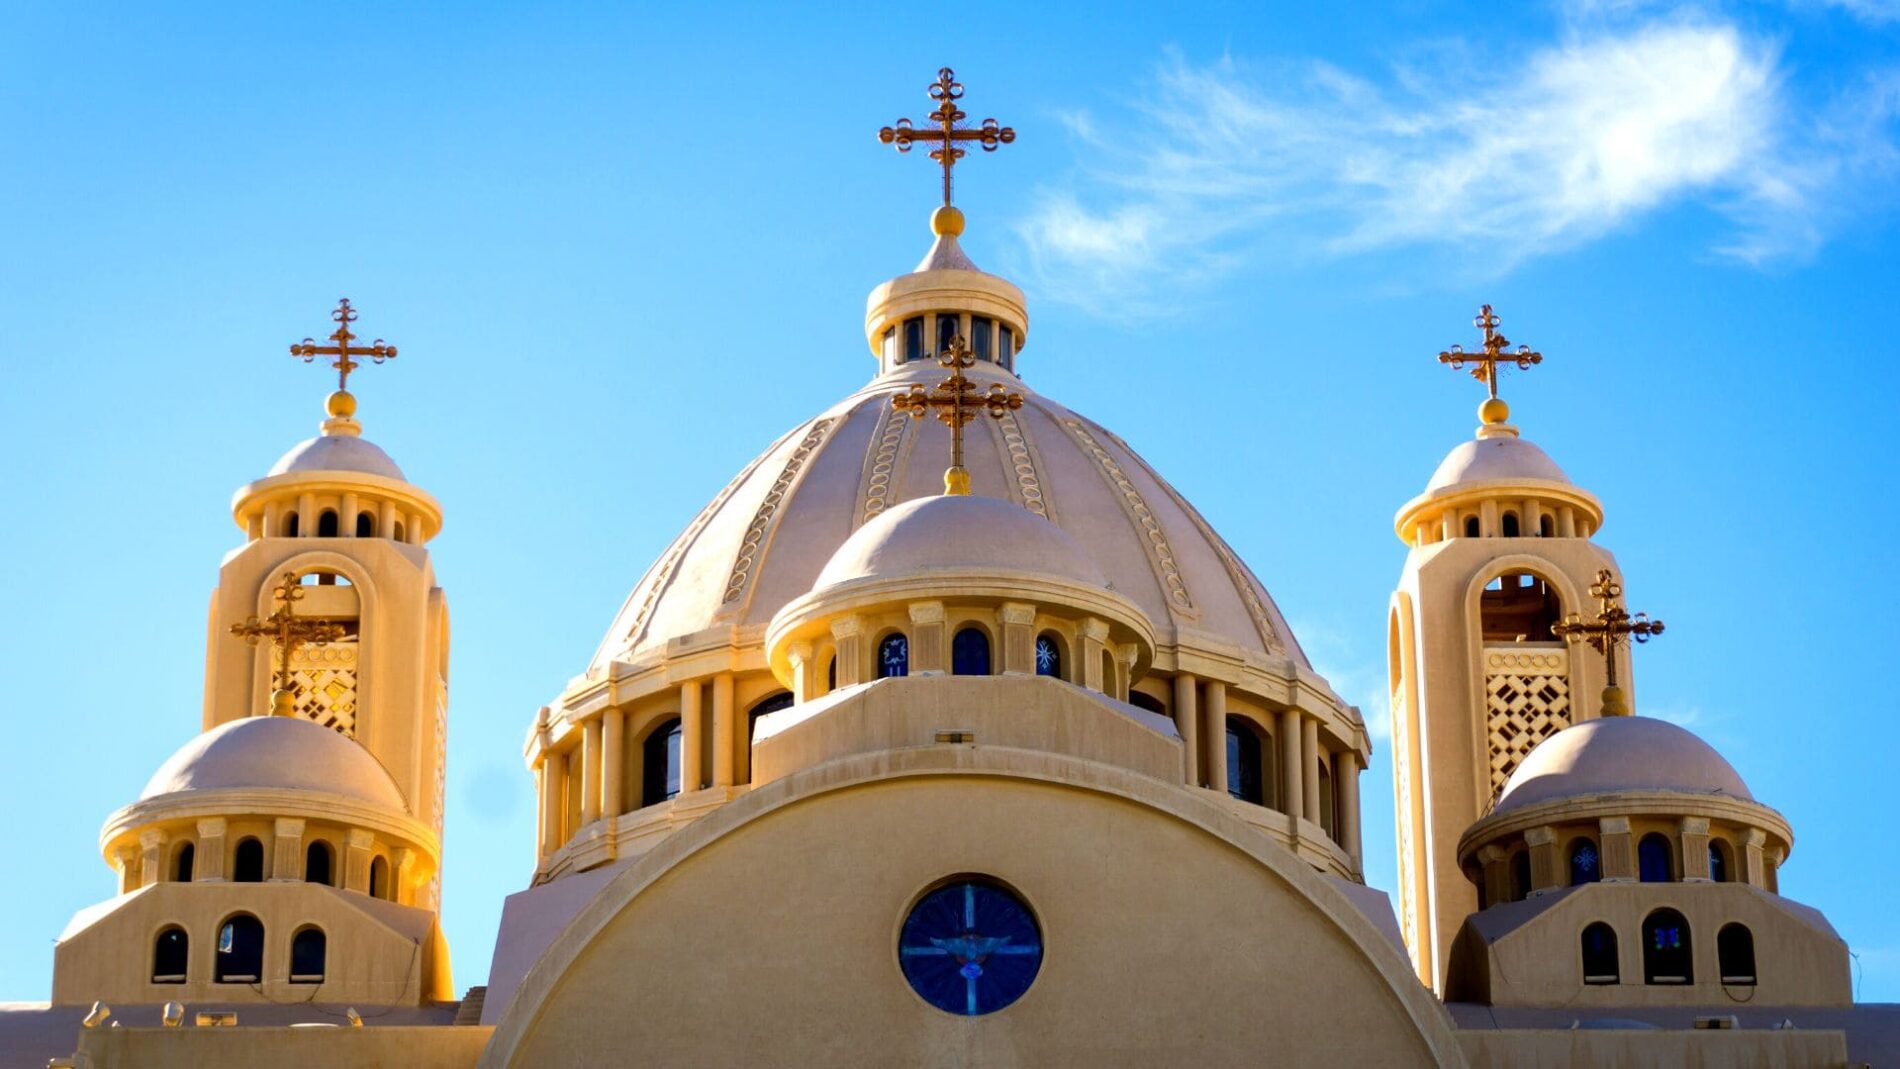 Le passage de la Sainte Famille en Égypte | Église copte | Spiritours